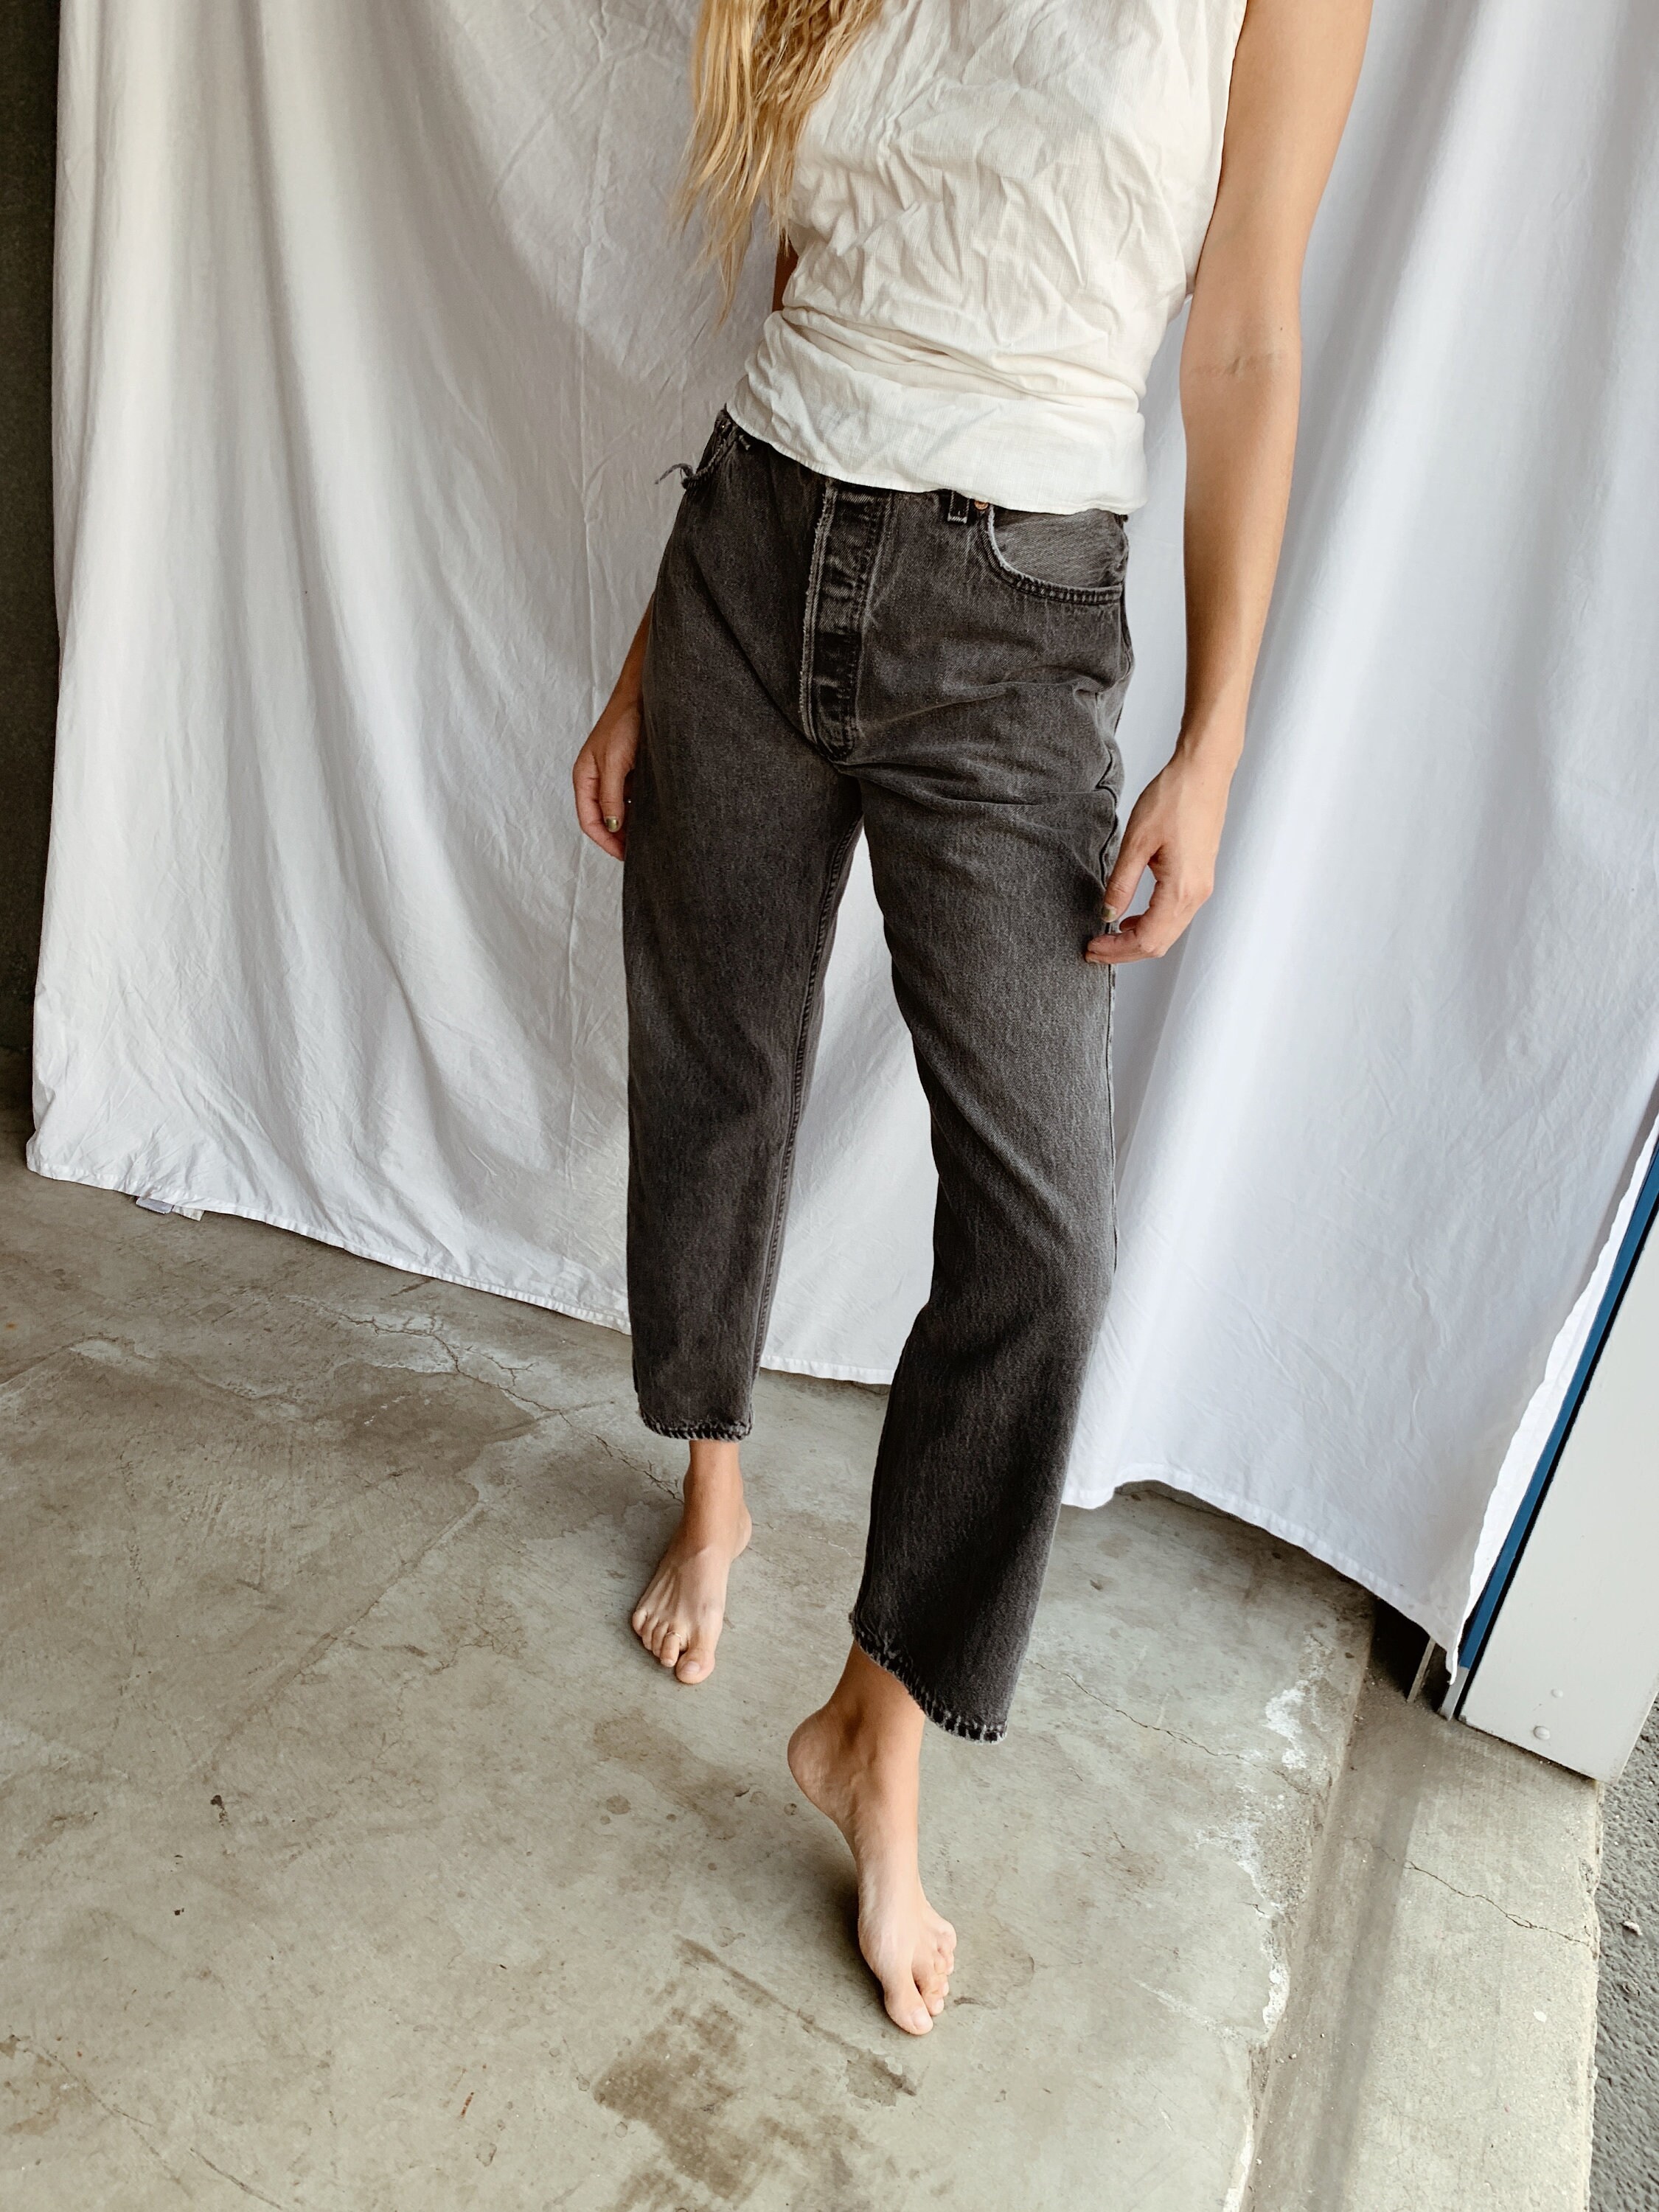 Levi's 501 jeans - size 32